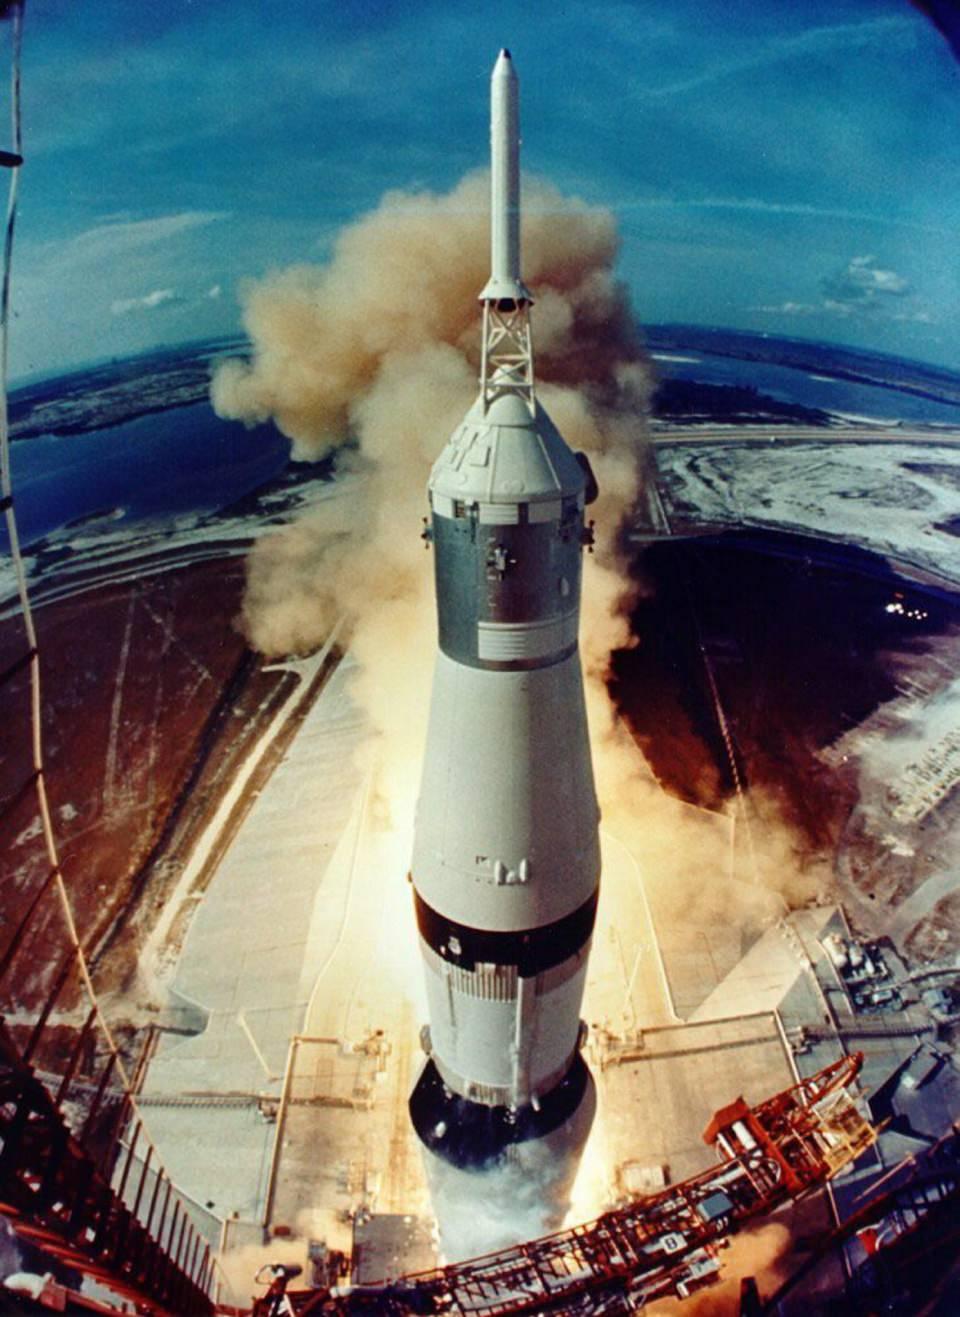 <p>Amerikalı astronot Neil Armstrong'un Ay'a ayak basmasının üzerinden 49 yıl geçti. Uzay, bu tarihi adımdan sonra özel şirketlerin de katıldığı bir rekabet alanı haline geldi.</p>
